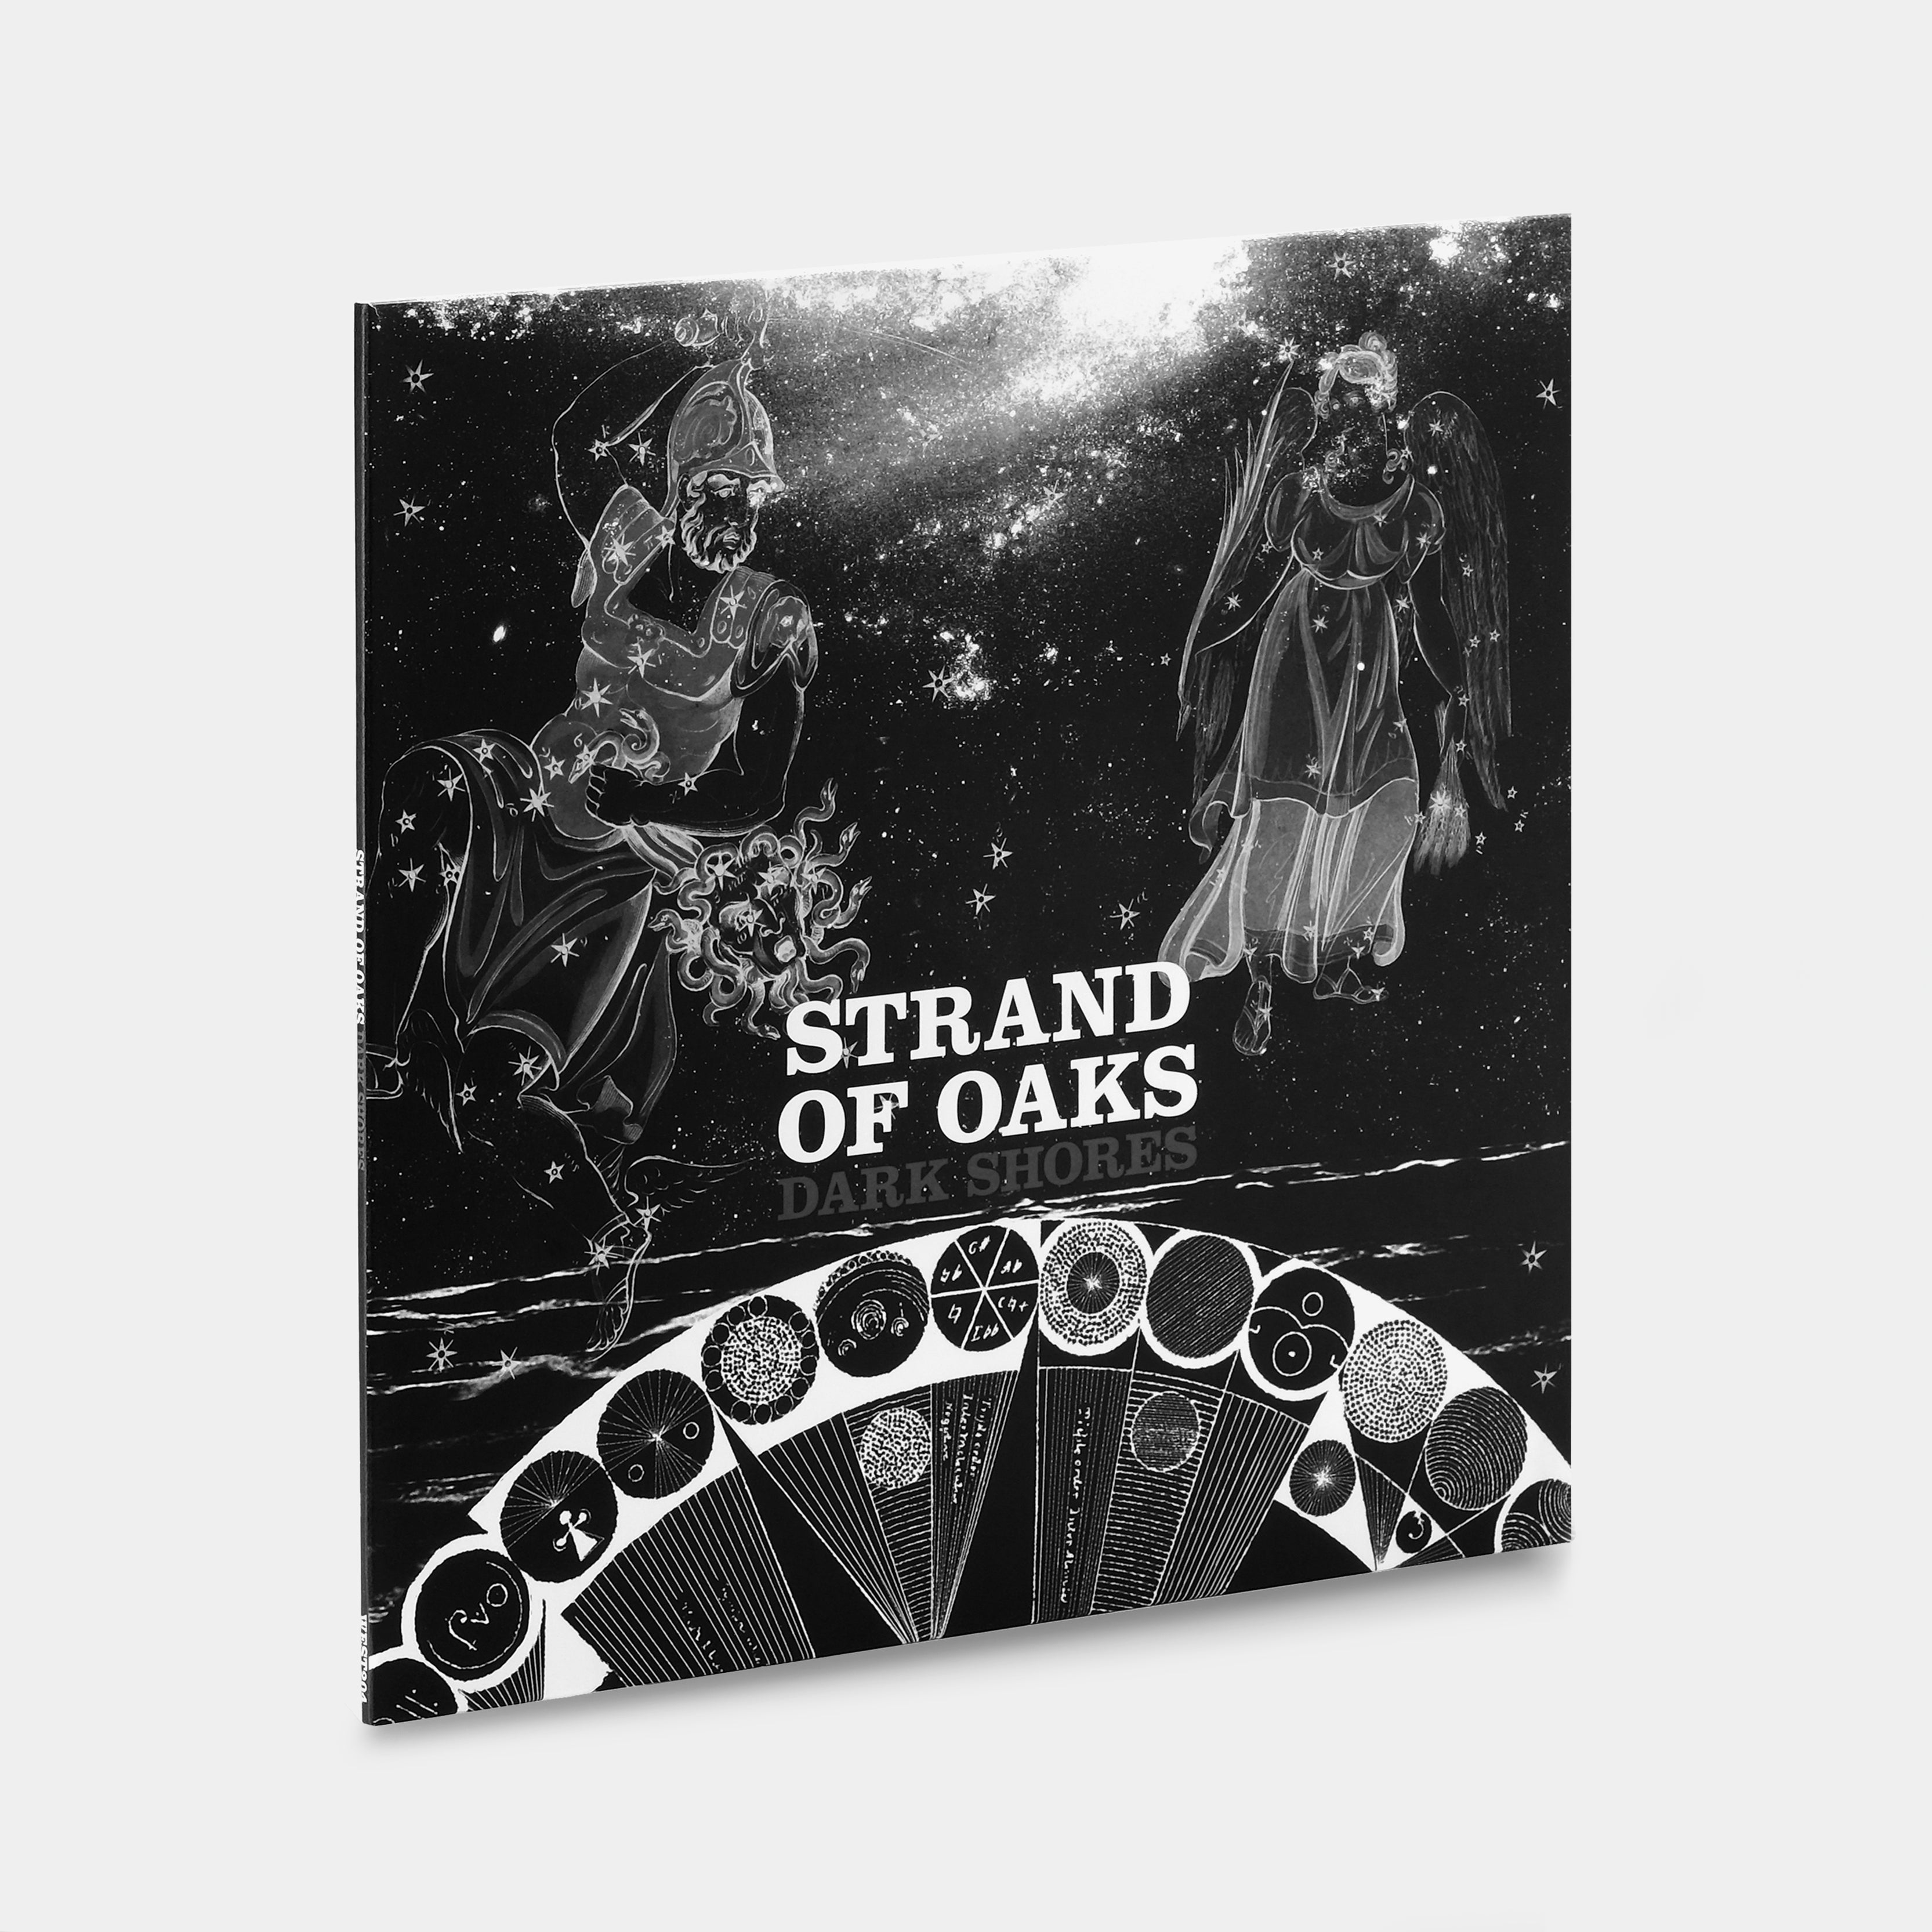 Strand Of Oaks - Dark Shores LP Sleeping Pill Blue Vinyl Record